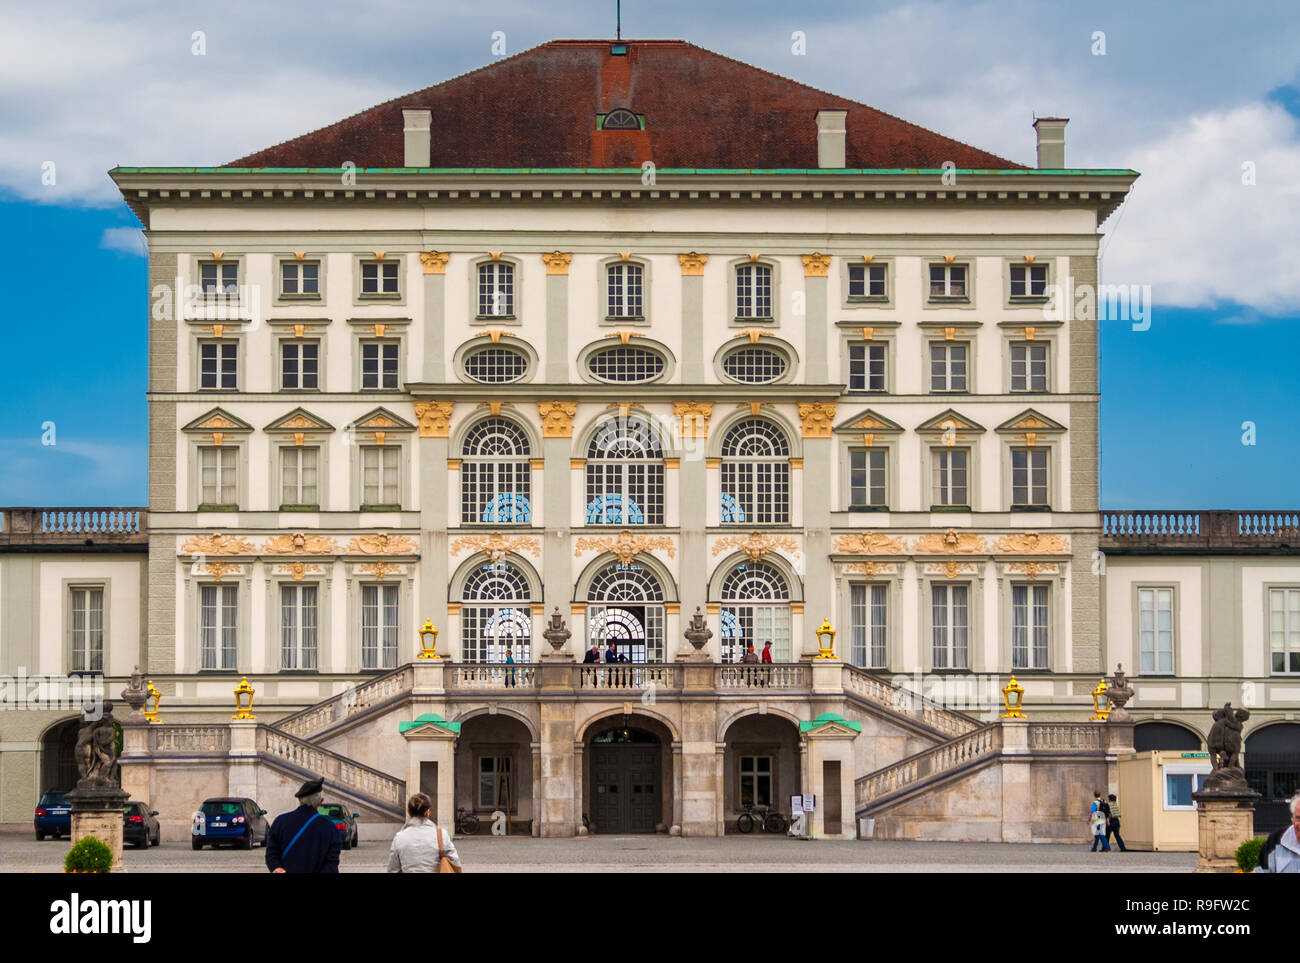 Eine große Nähe Vorderansicht Der zentrale Pavillon der Schloss Nymphenburg in München, Bayern, Süddeutschland. Das Barockschloss, zusammen mit seinen ... Stockfoto